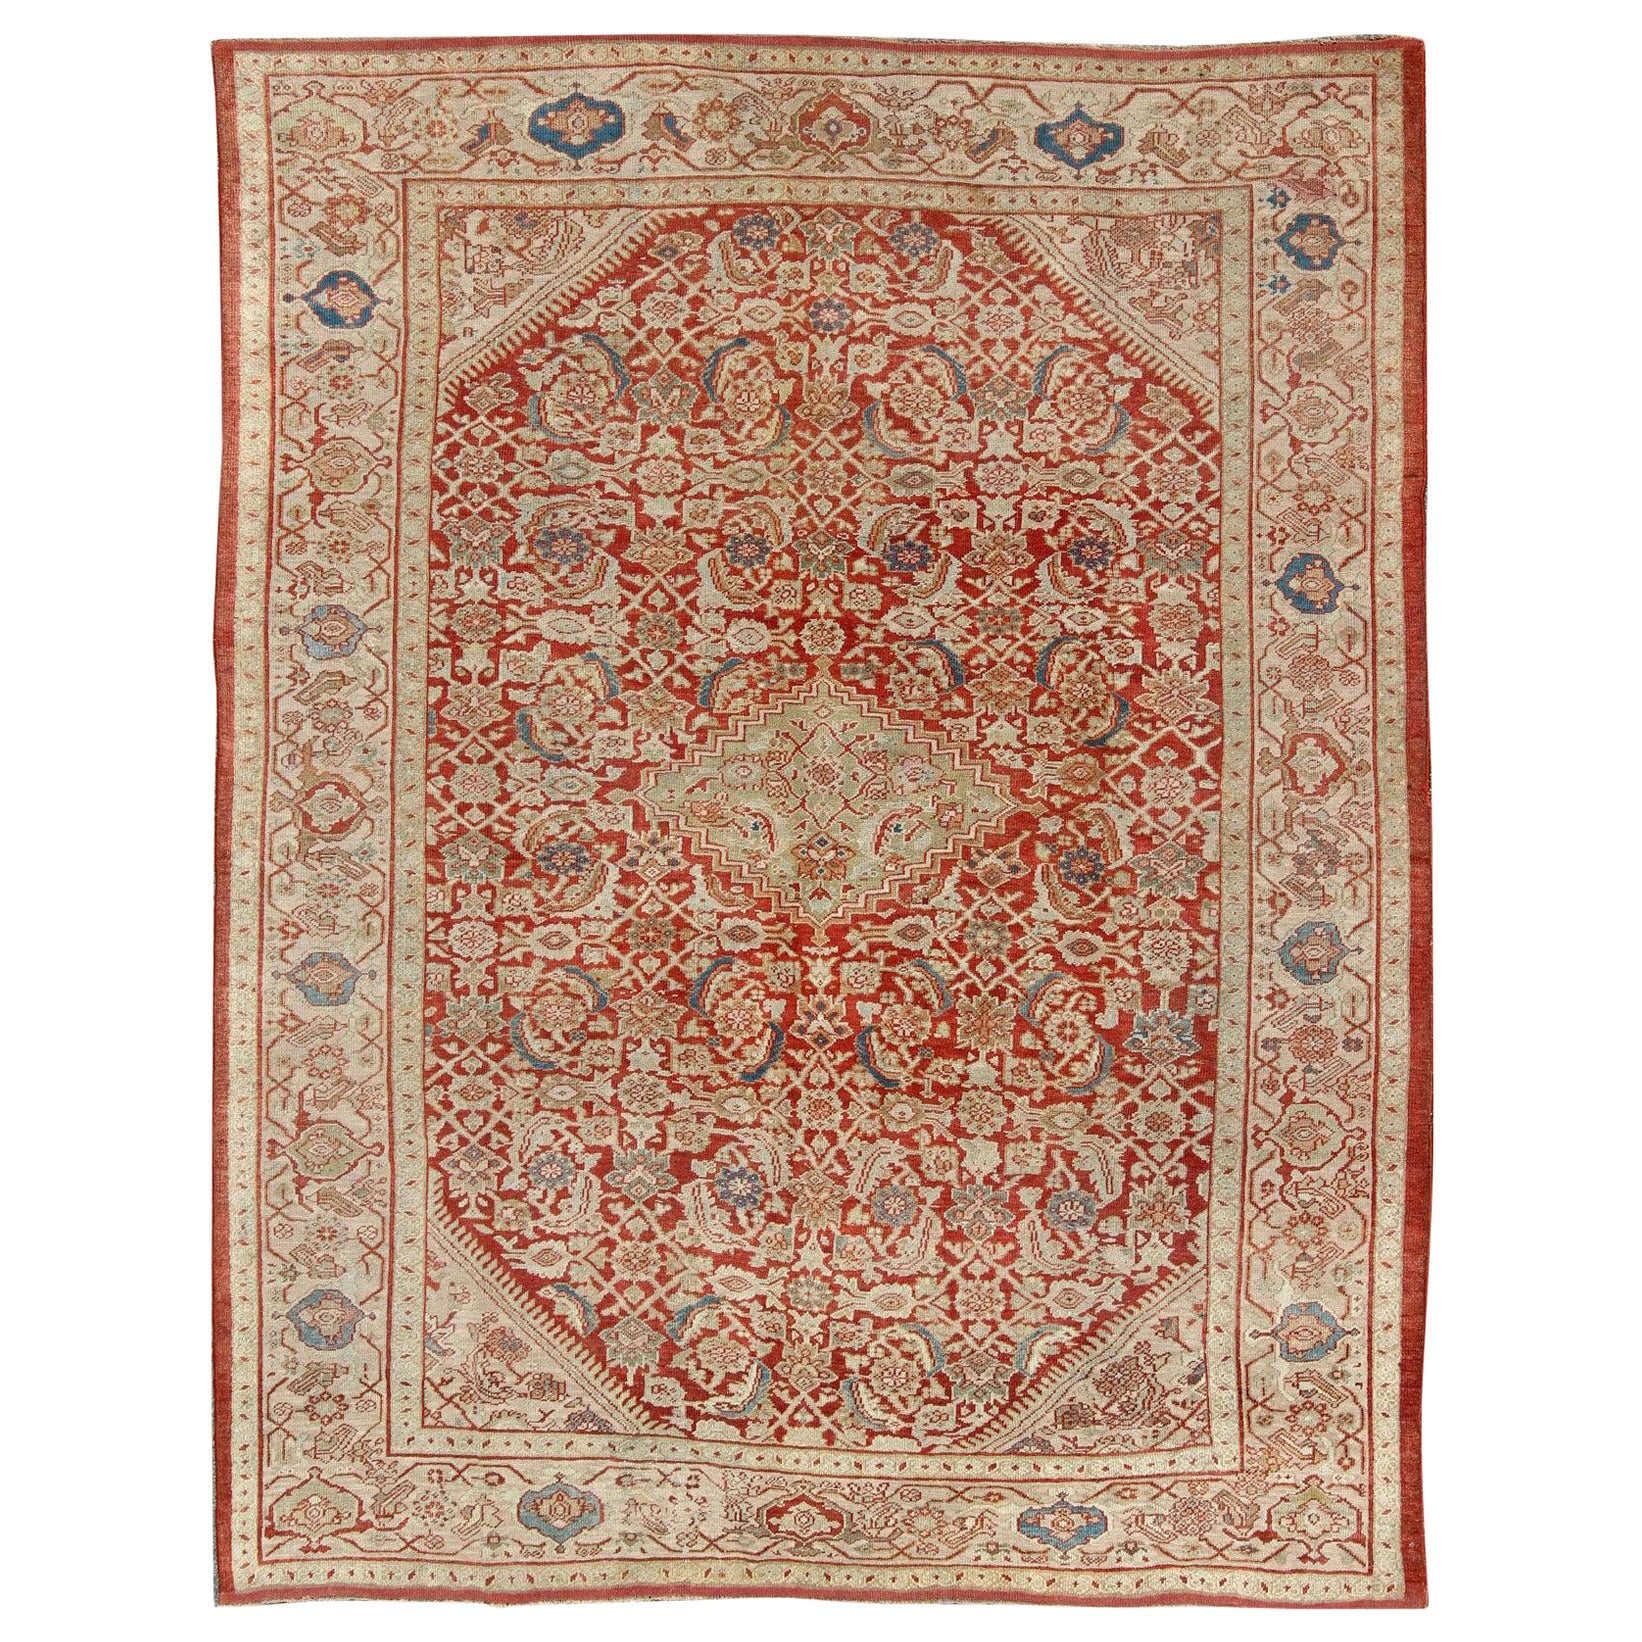 Antiker persischer Sultanabad-Teppich in Rot, Grün, Blau, Taupe und Creme